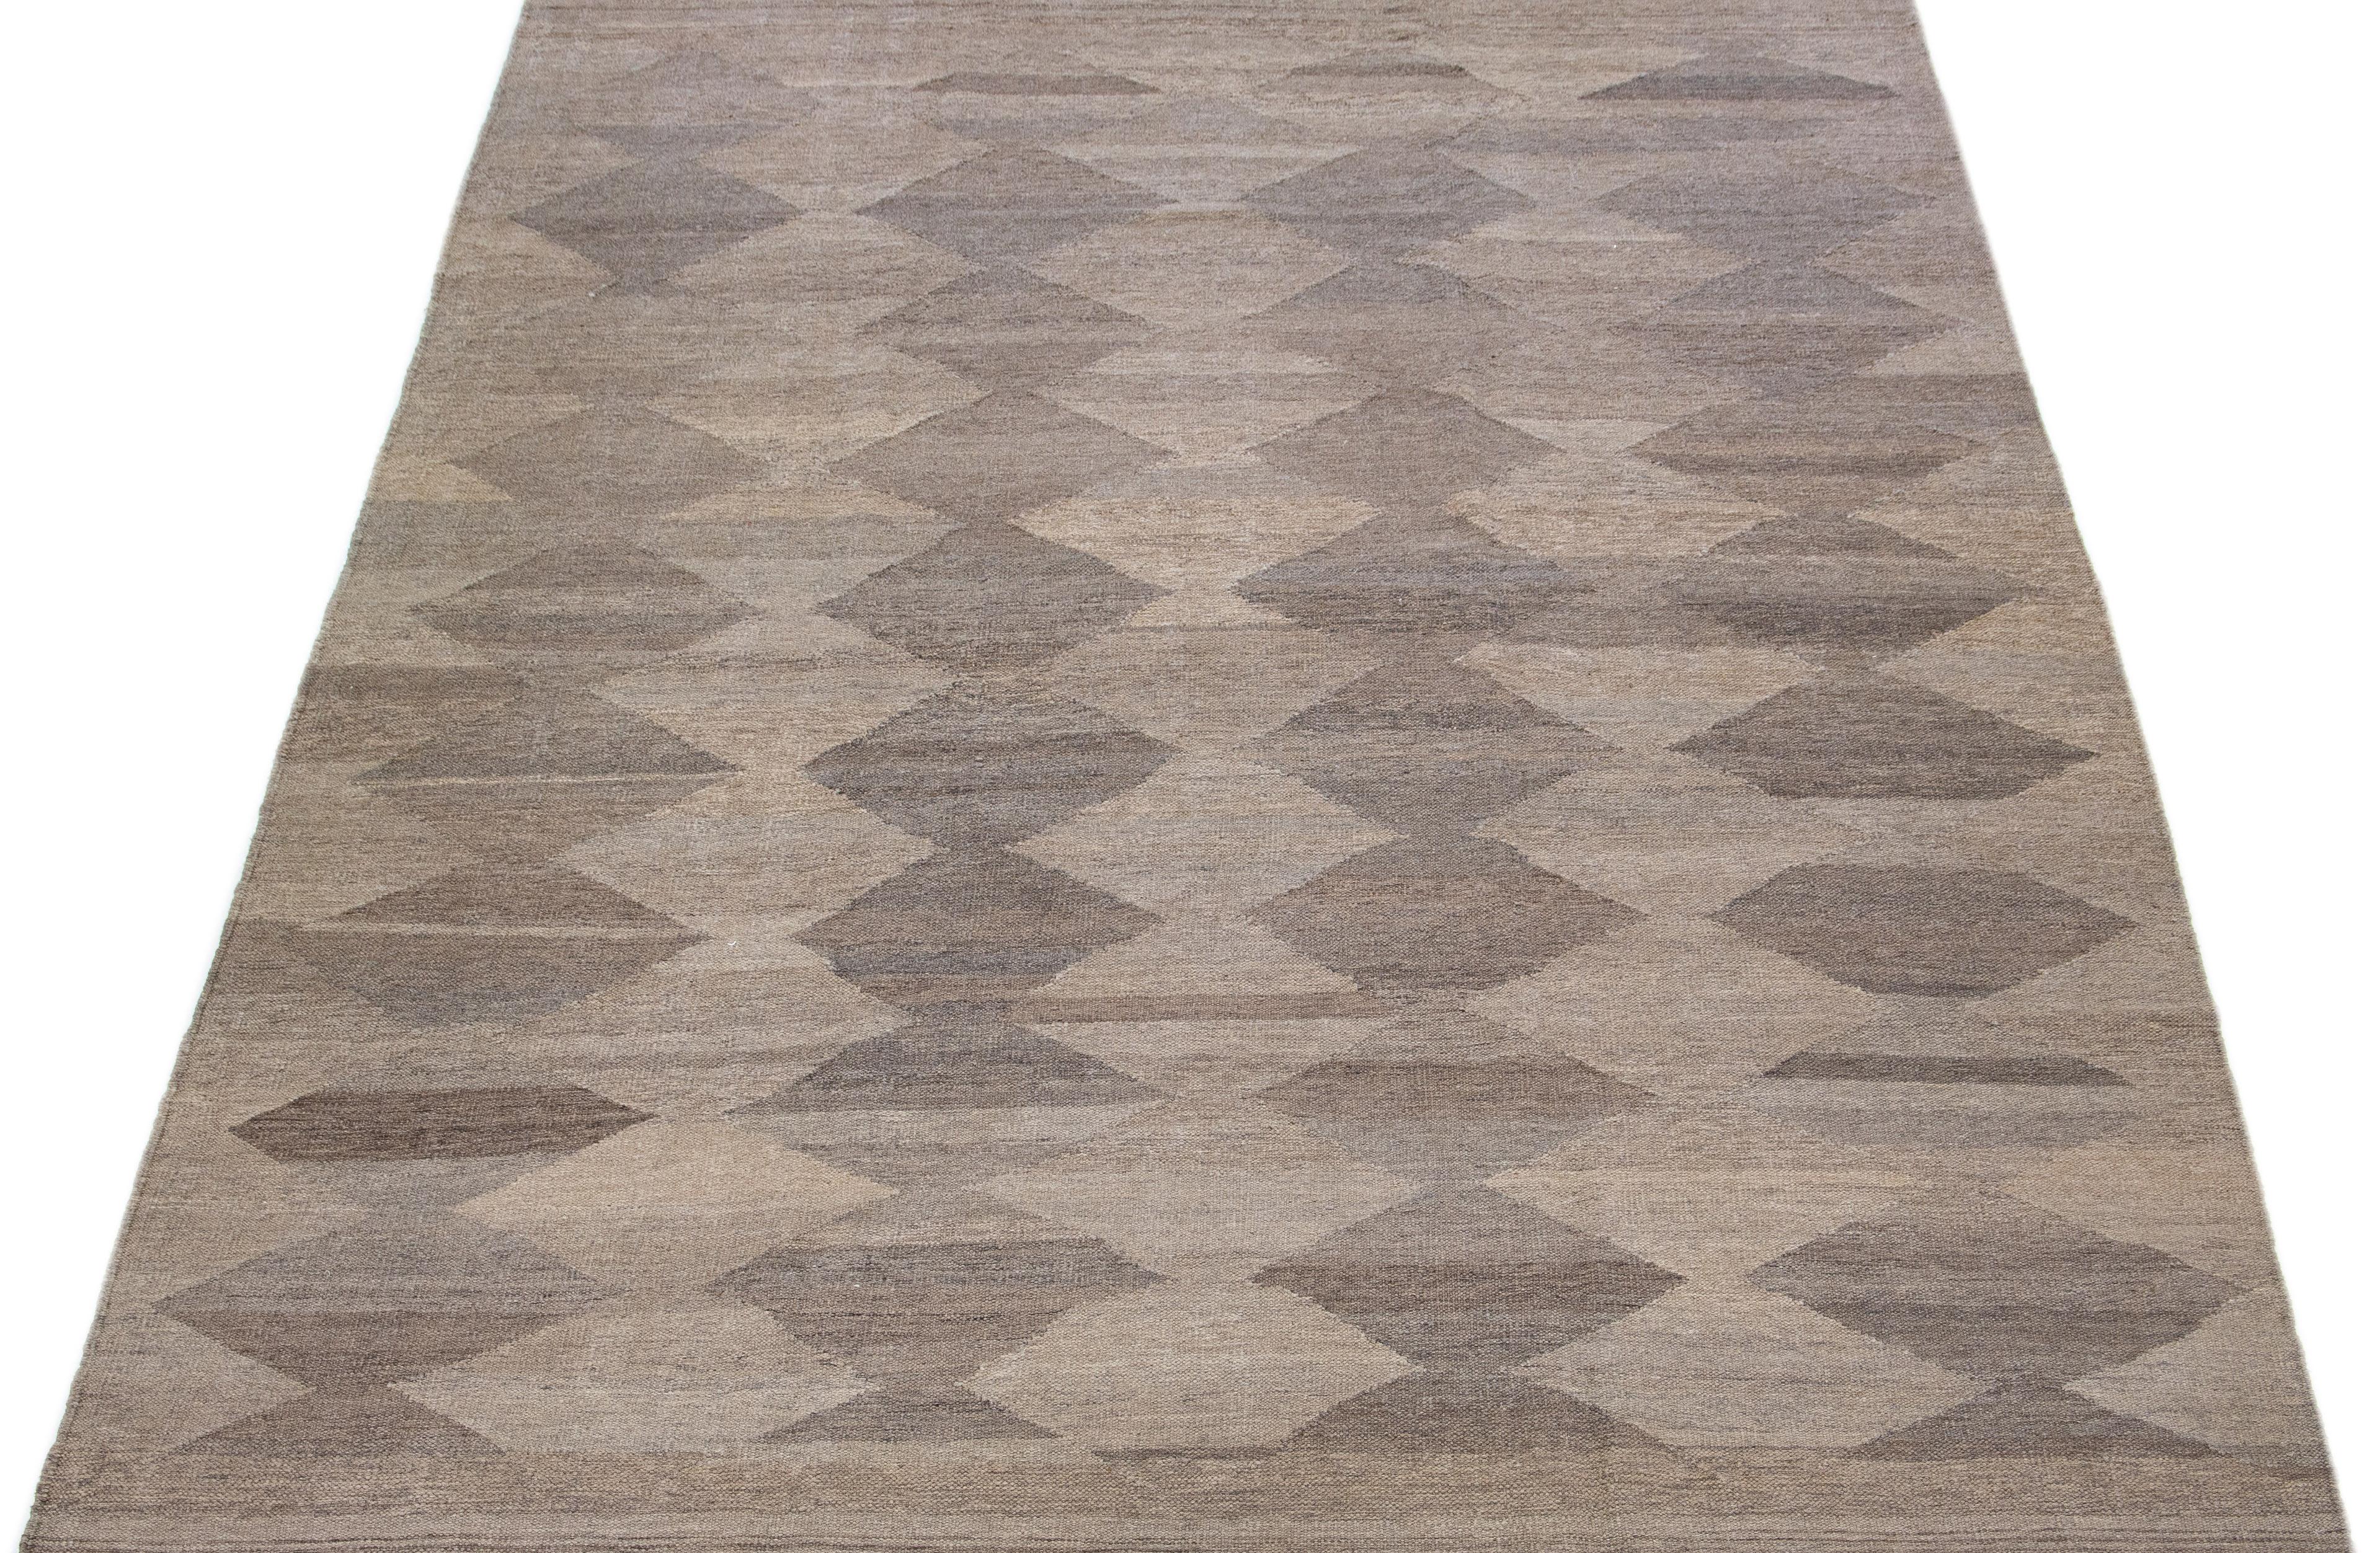 Ce tapis Rug & Kilim en laine tissée à plat est rehaussé d'un champ de couleur marron captivant et de touches de gris sur l'ensemble du tapis. Son design géométrique lui confère une allure moderne et esthétique.

Ce tapis mesure 8'8